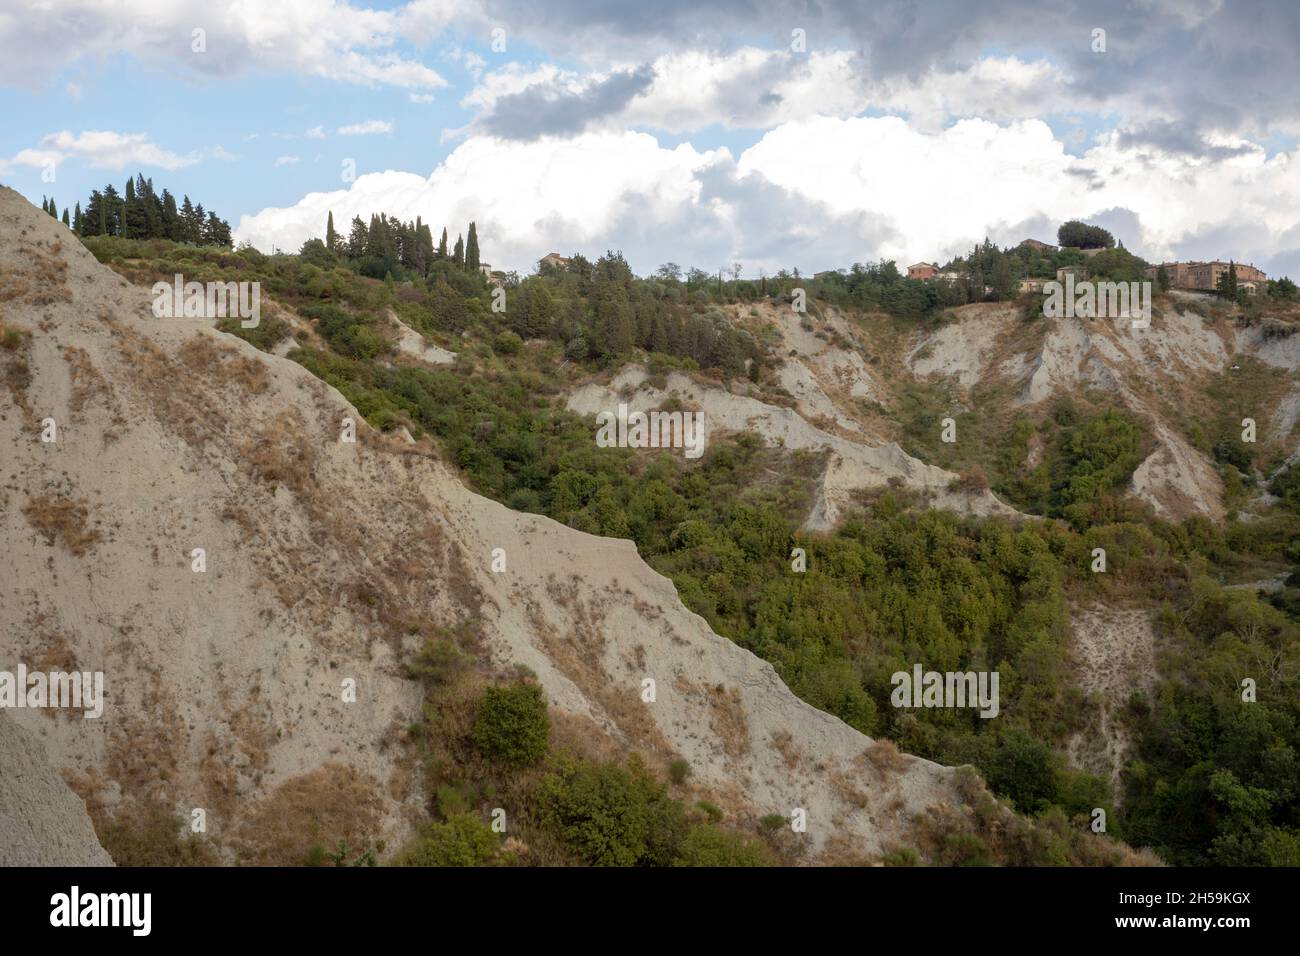 Badlands near Chiusure village, Asciano, Tuscany, Italy Stock Photo